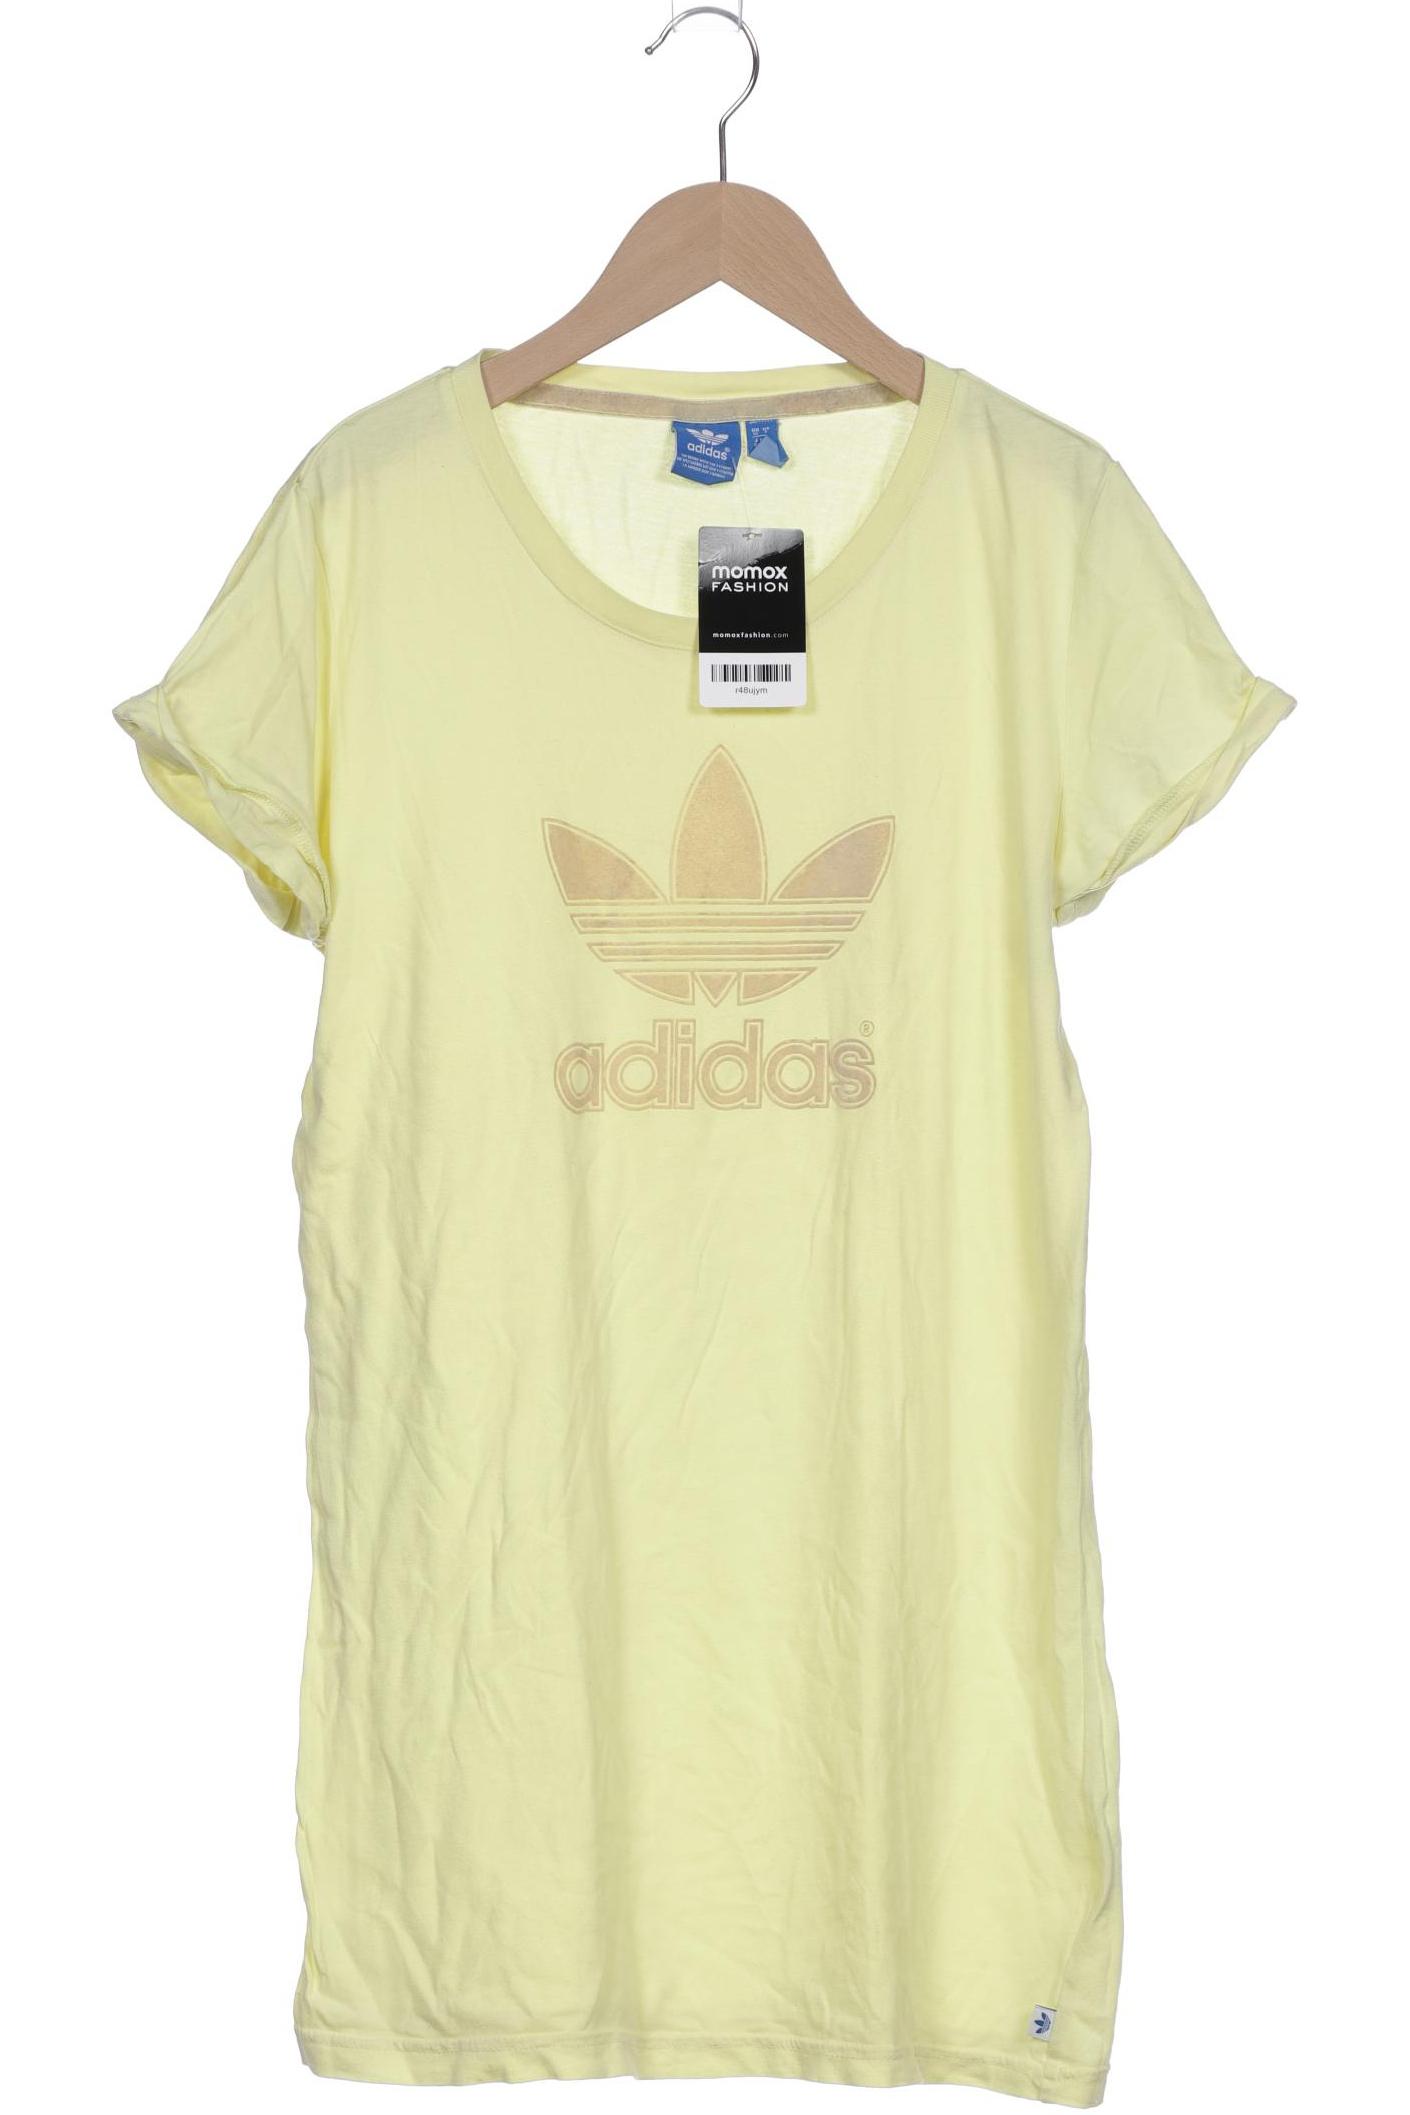 adidas Originals Damen T-Shirt, gelb von adidas Originals